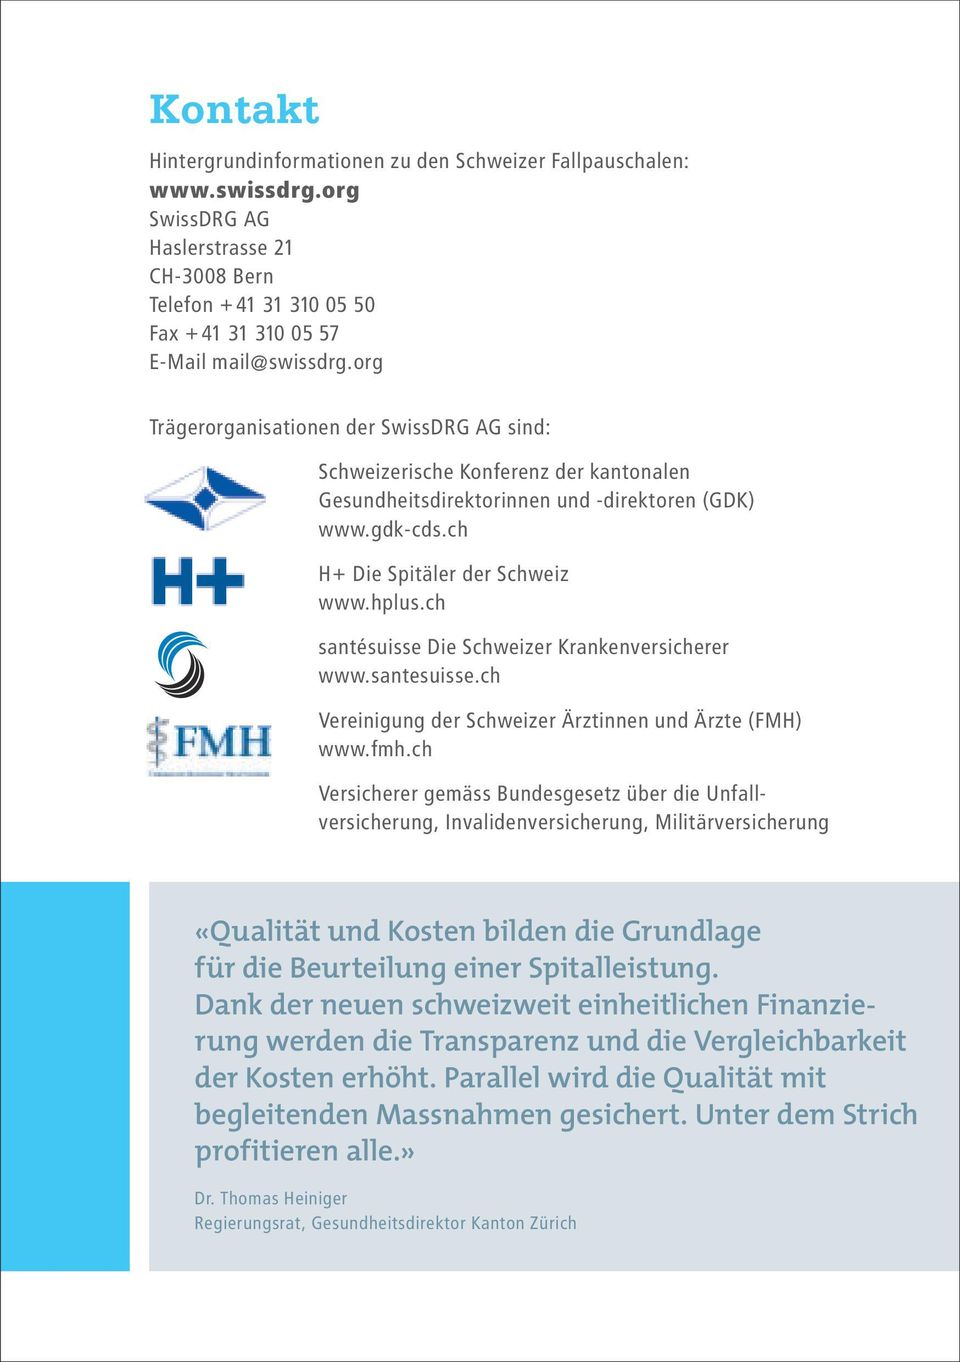 ch santésuisse Die Schweizer Krankenversicherer www.santesuisse.ch Vereinigung der Schweizer Ärztinnen und Ärzte (FMH) www.fmh.